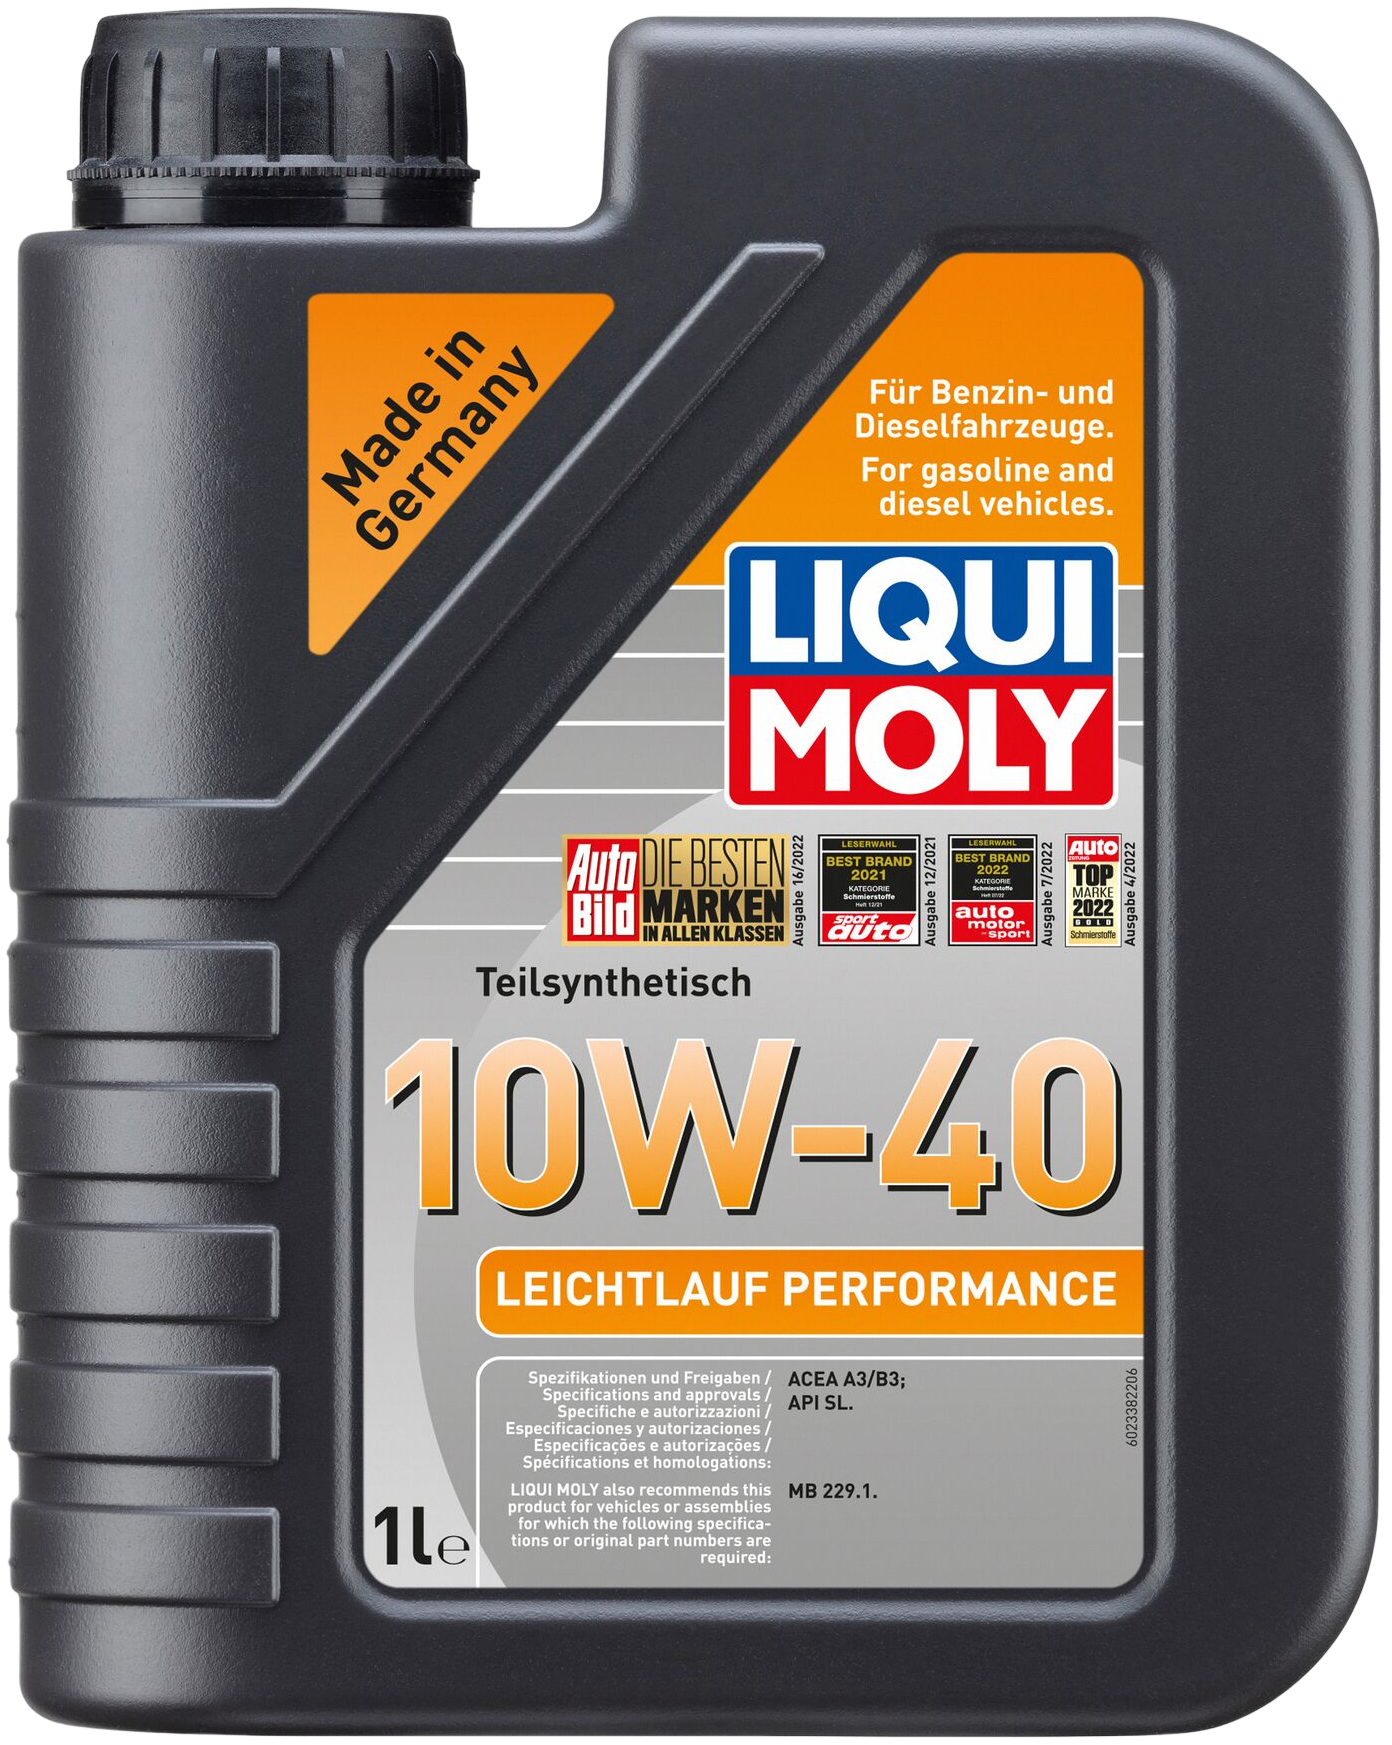 Liqui Moly Leichtlauf Performance 10W-40, 1 lt